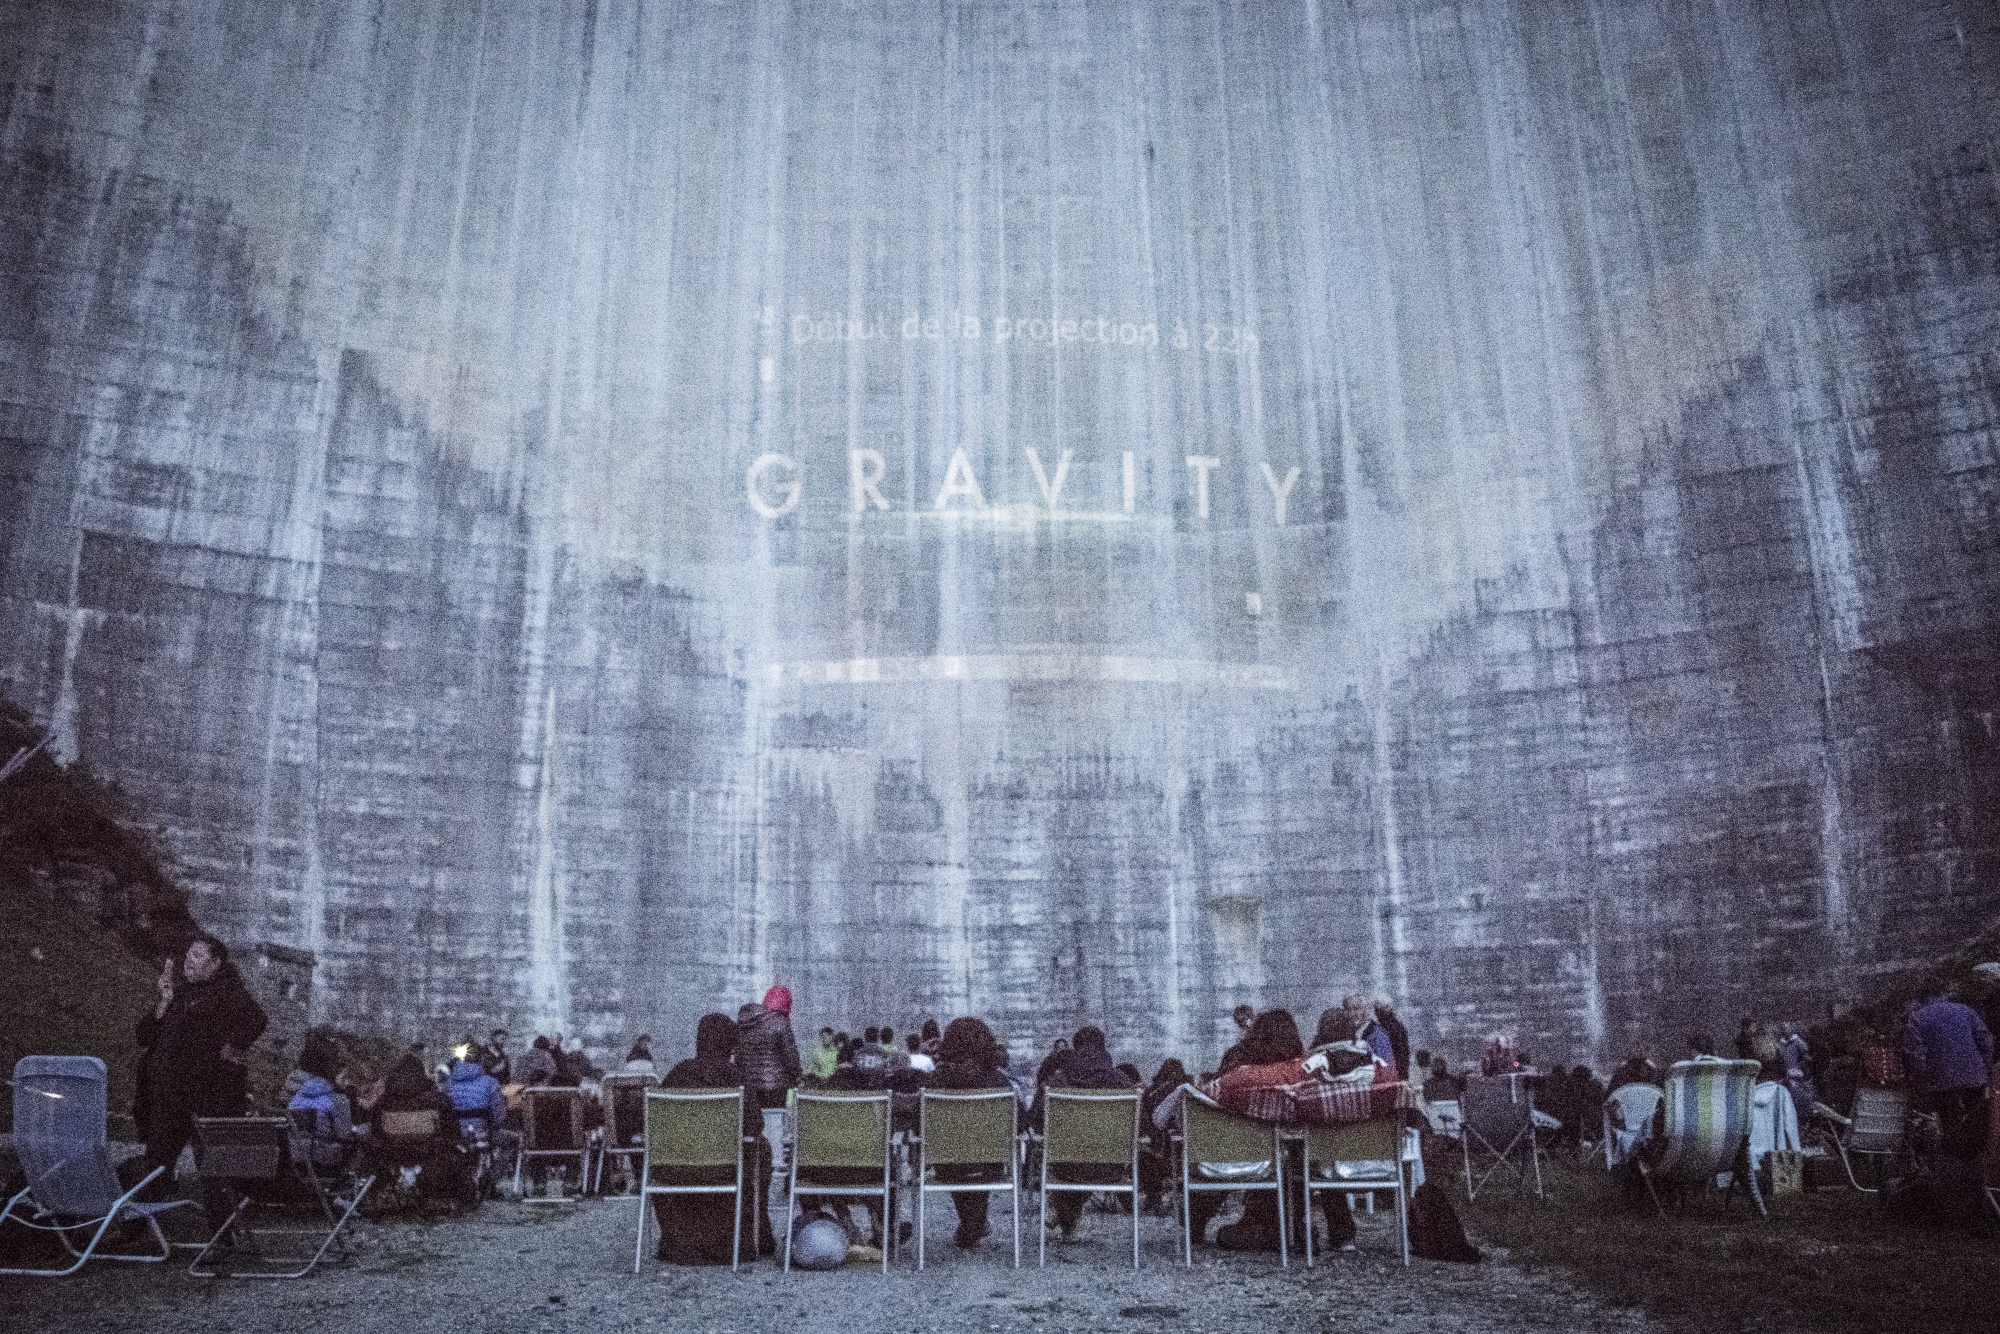 Des films à voir dans des lieux inédits, comme «Gravity», l'été dernier au barrage de Moiry.